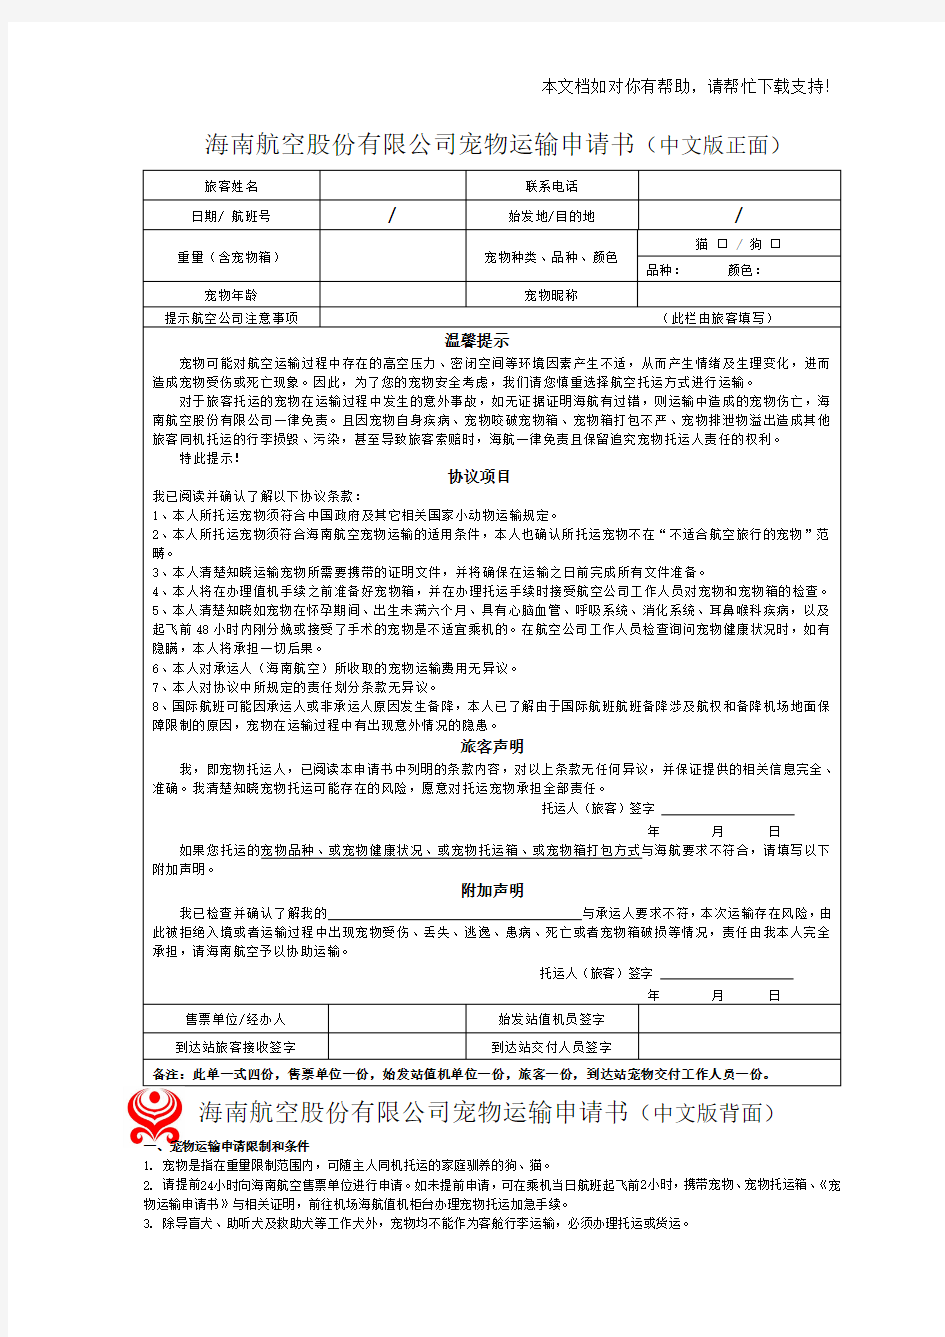 海南航空股份有限公司宠物运输申请书(中文版正面)